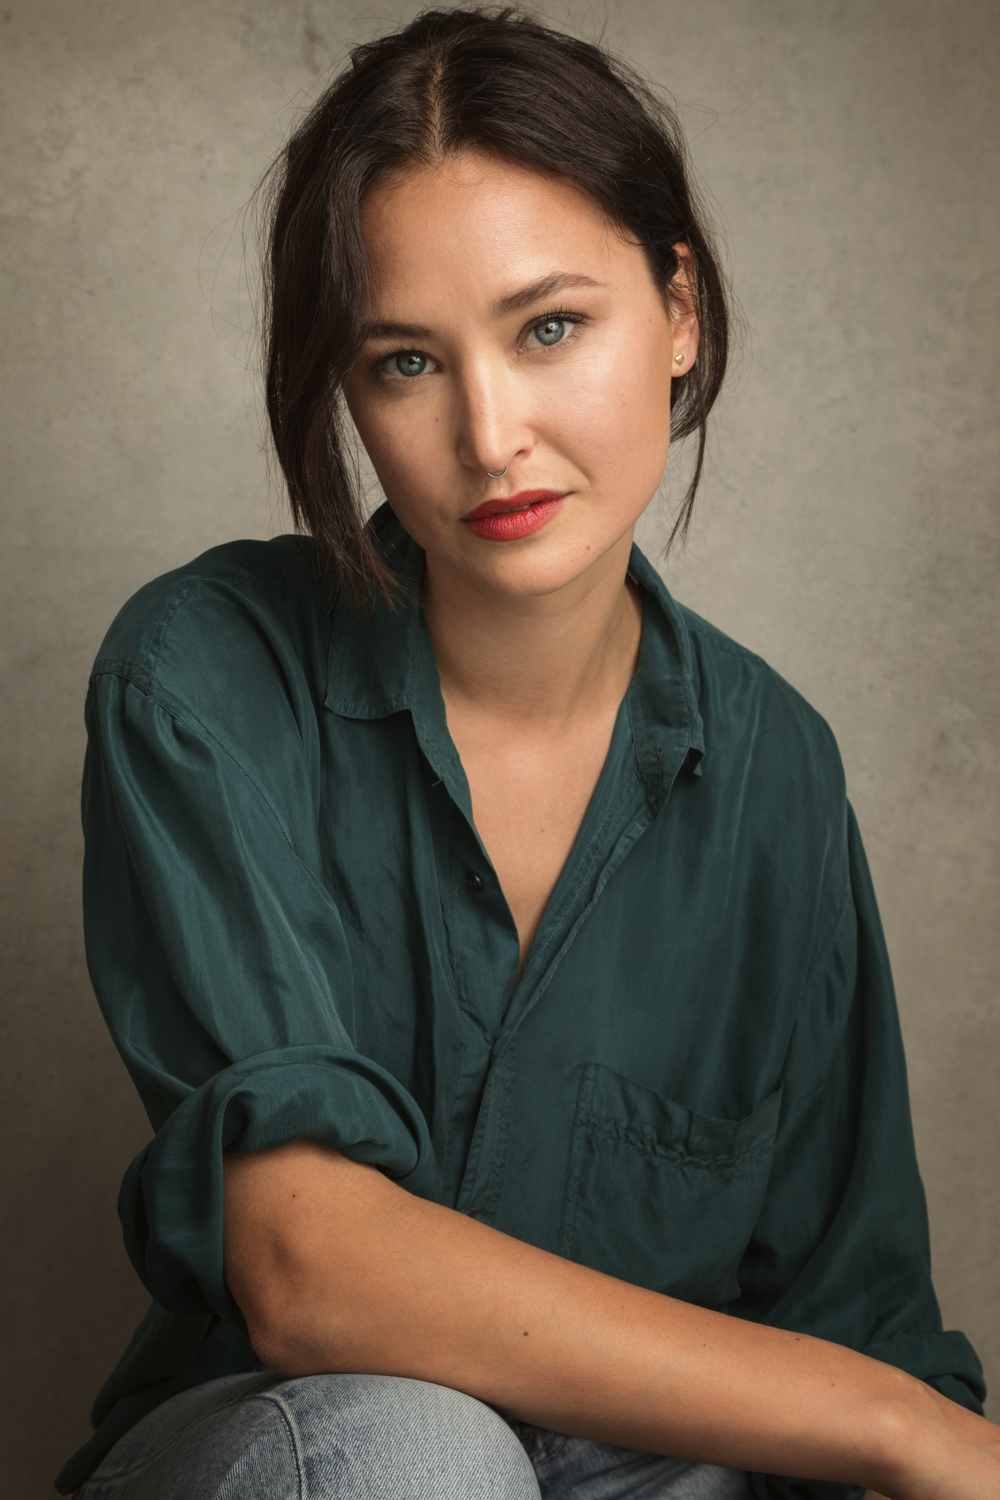 Actress: Amanda Urvall Nyren